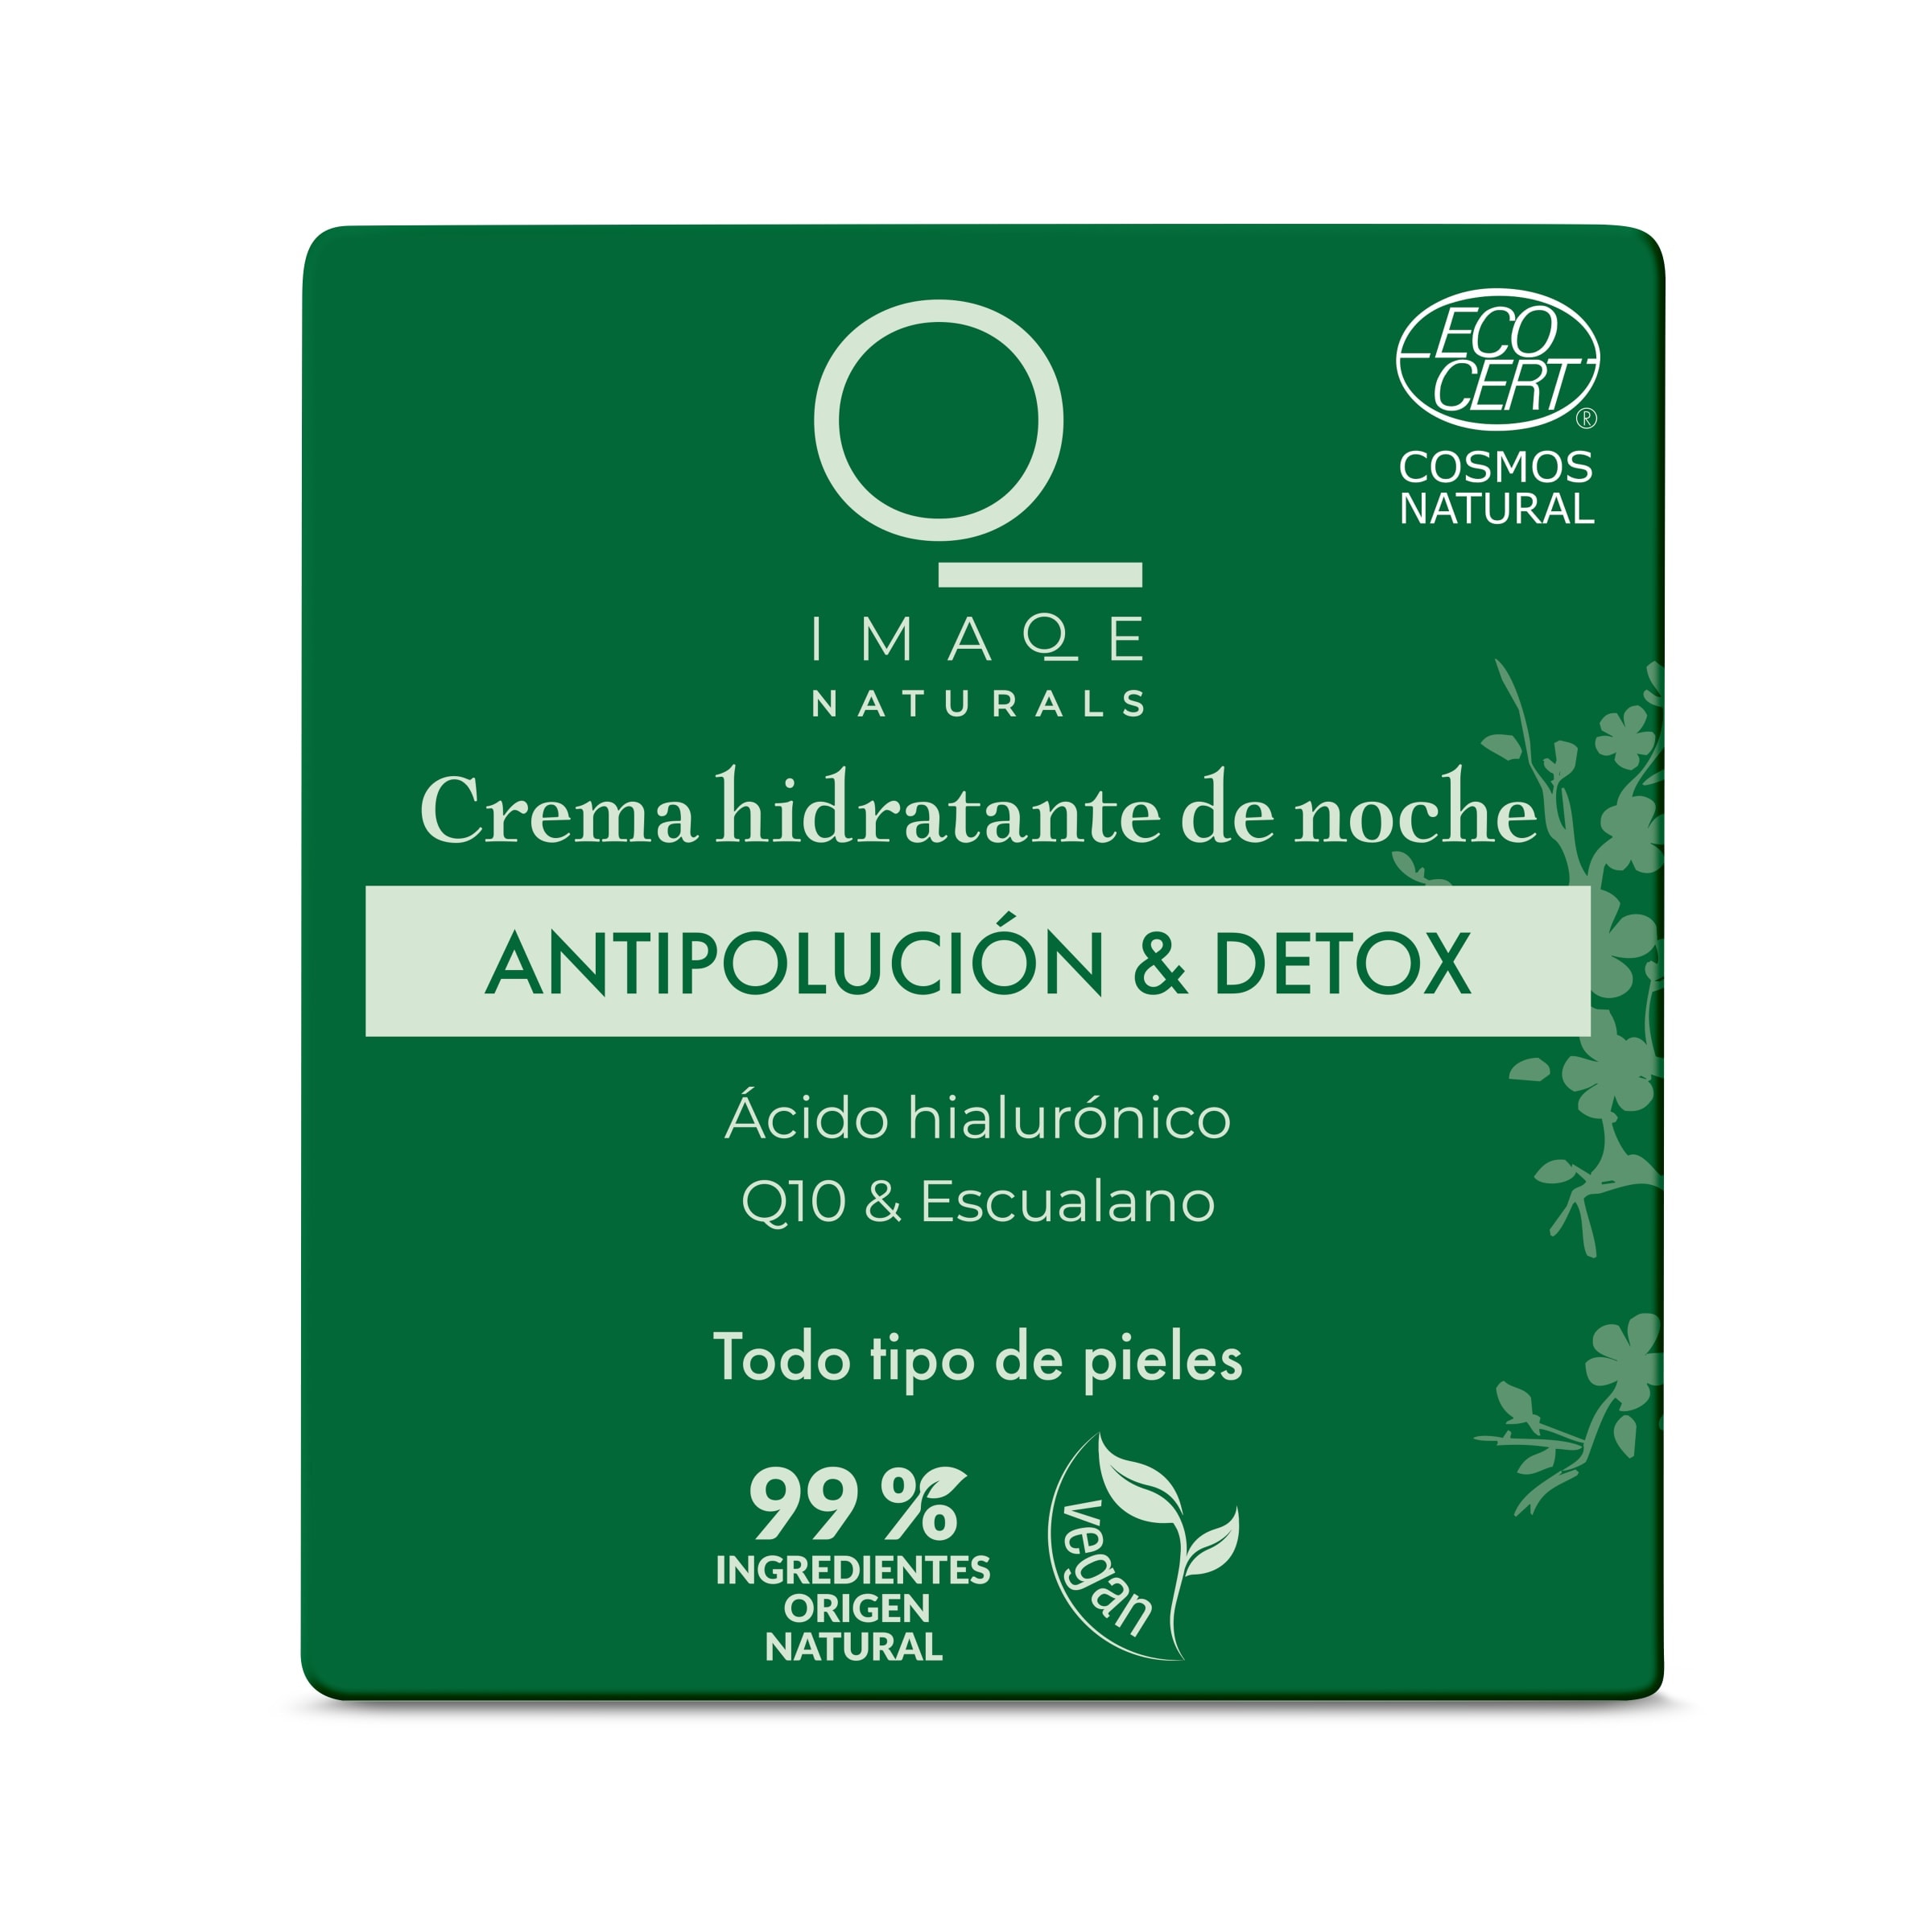 Crema facial de noche natural antipolución & detox Imaqe frasco 50 ml - Supermercados  DIA